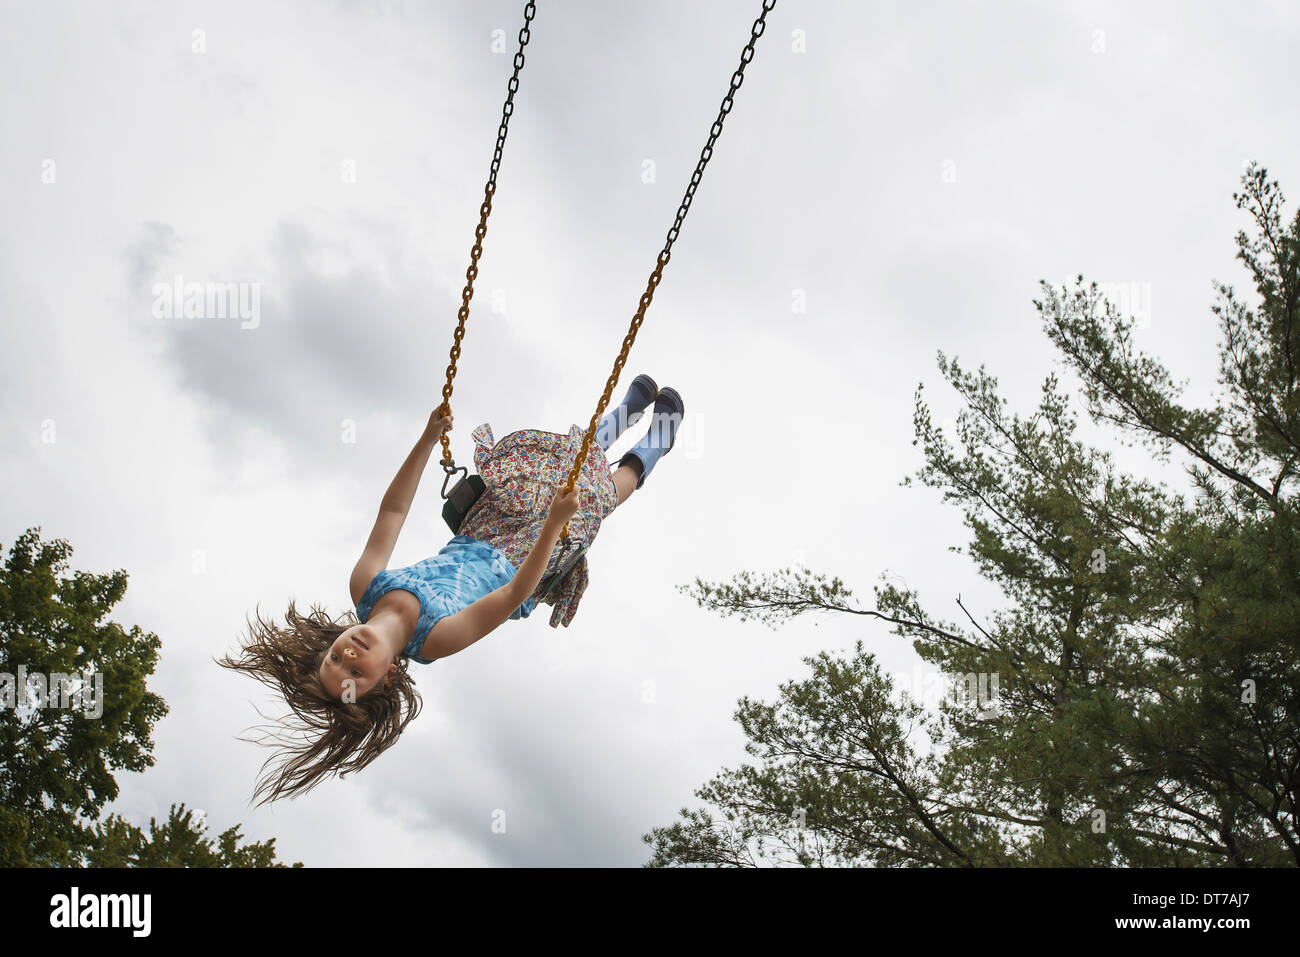 Una ragazza su una corda swing in aria in alto Woodstock New York USA USA Foto Stock